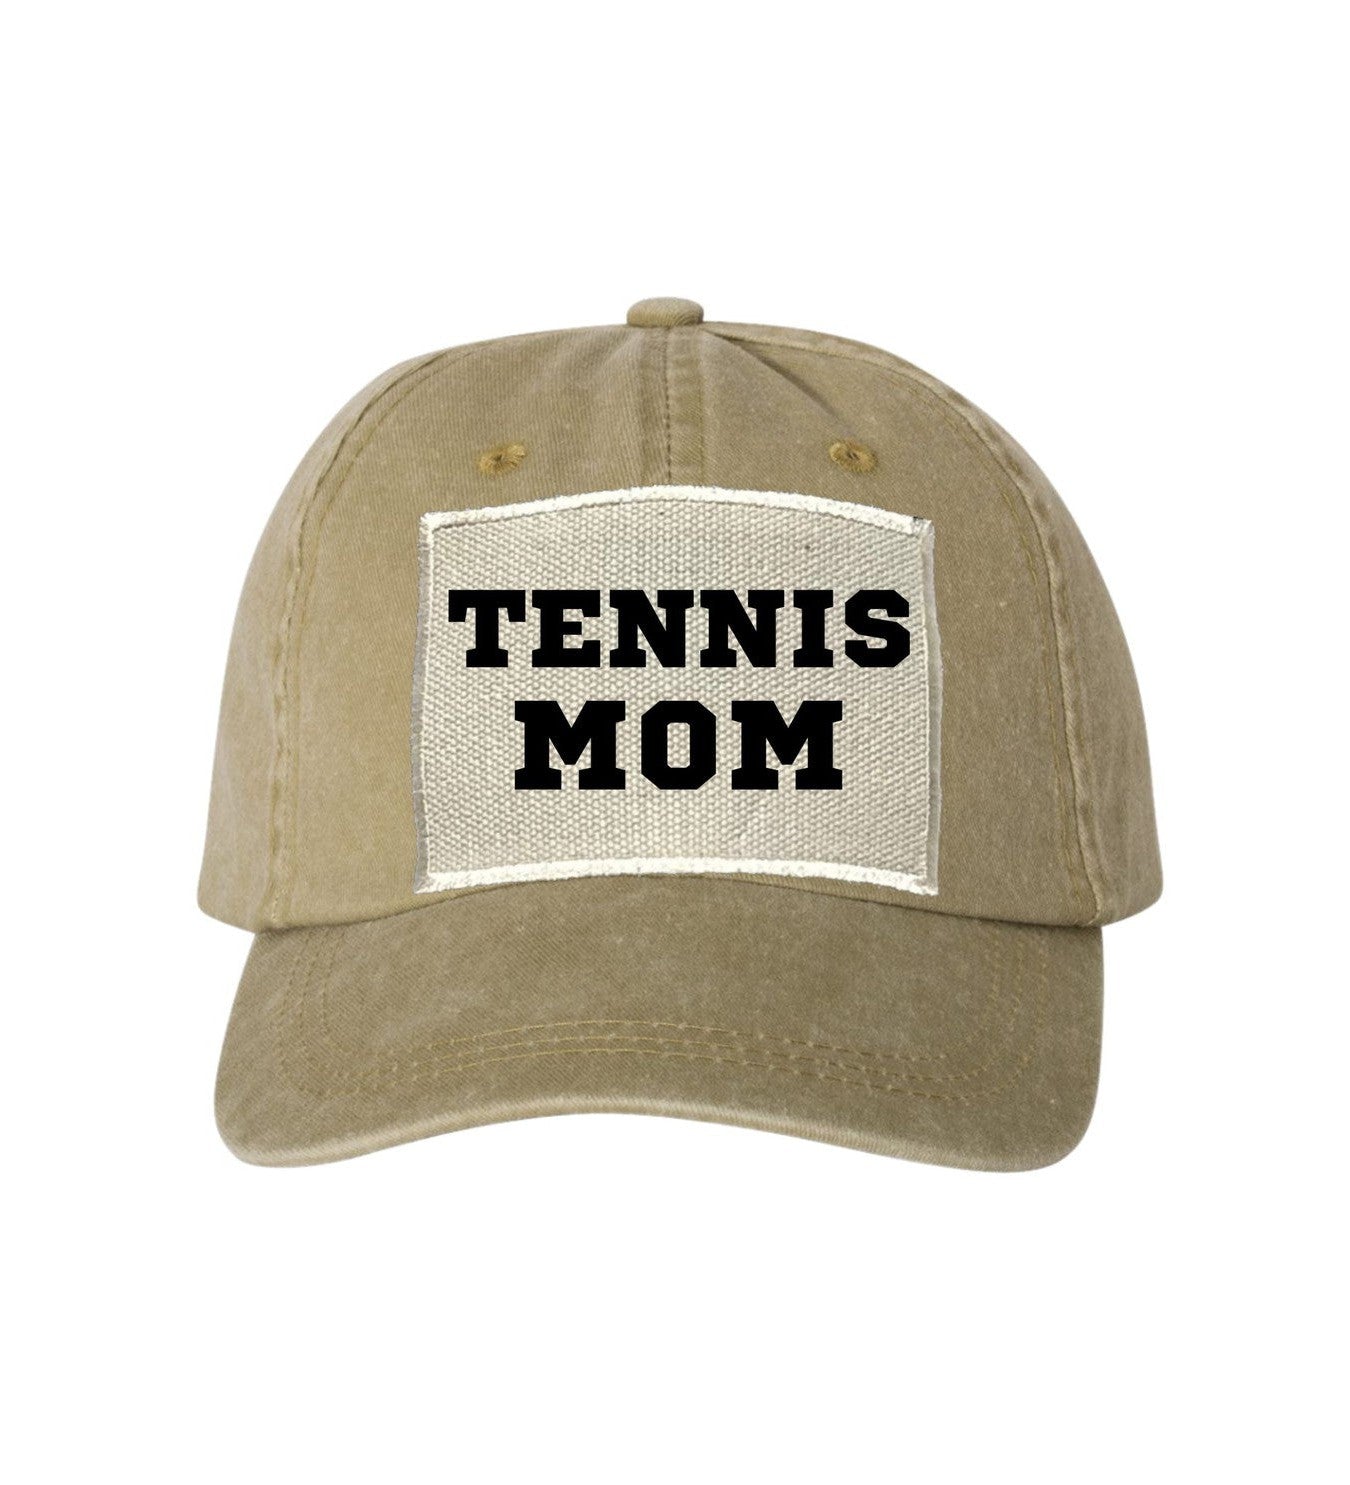 Tennis Mom Ball Cap